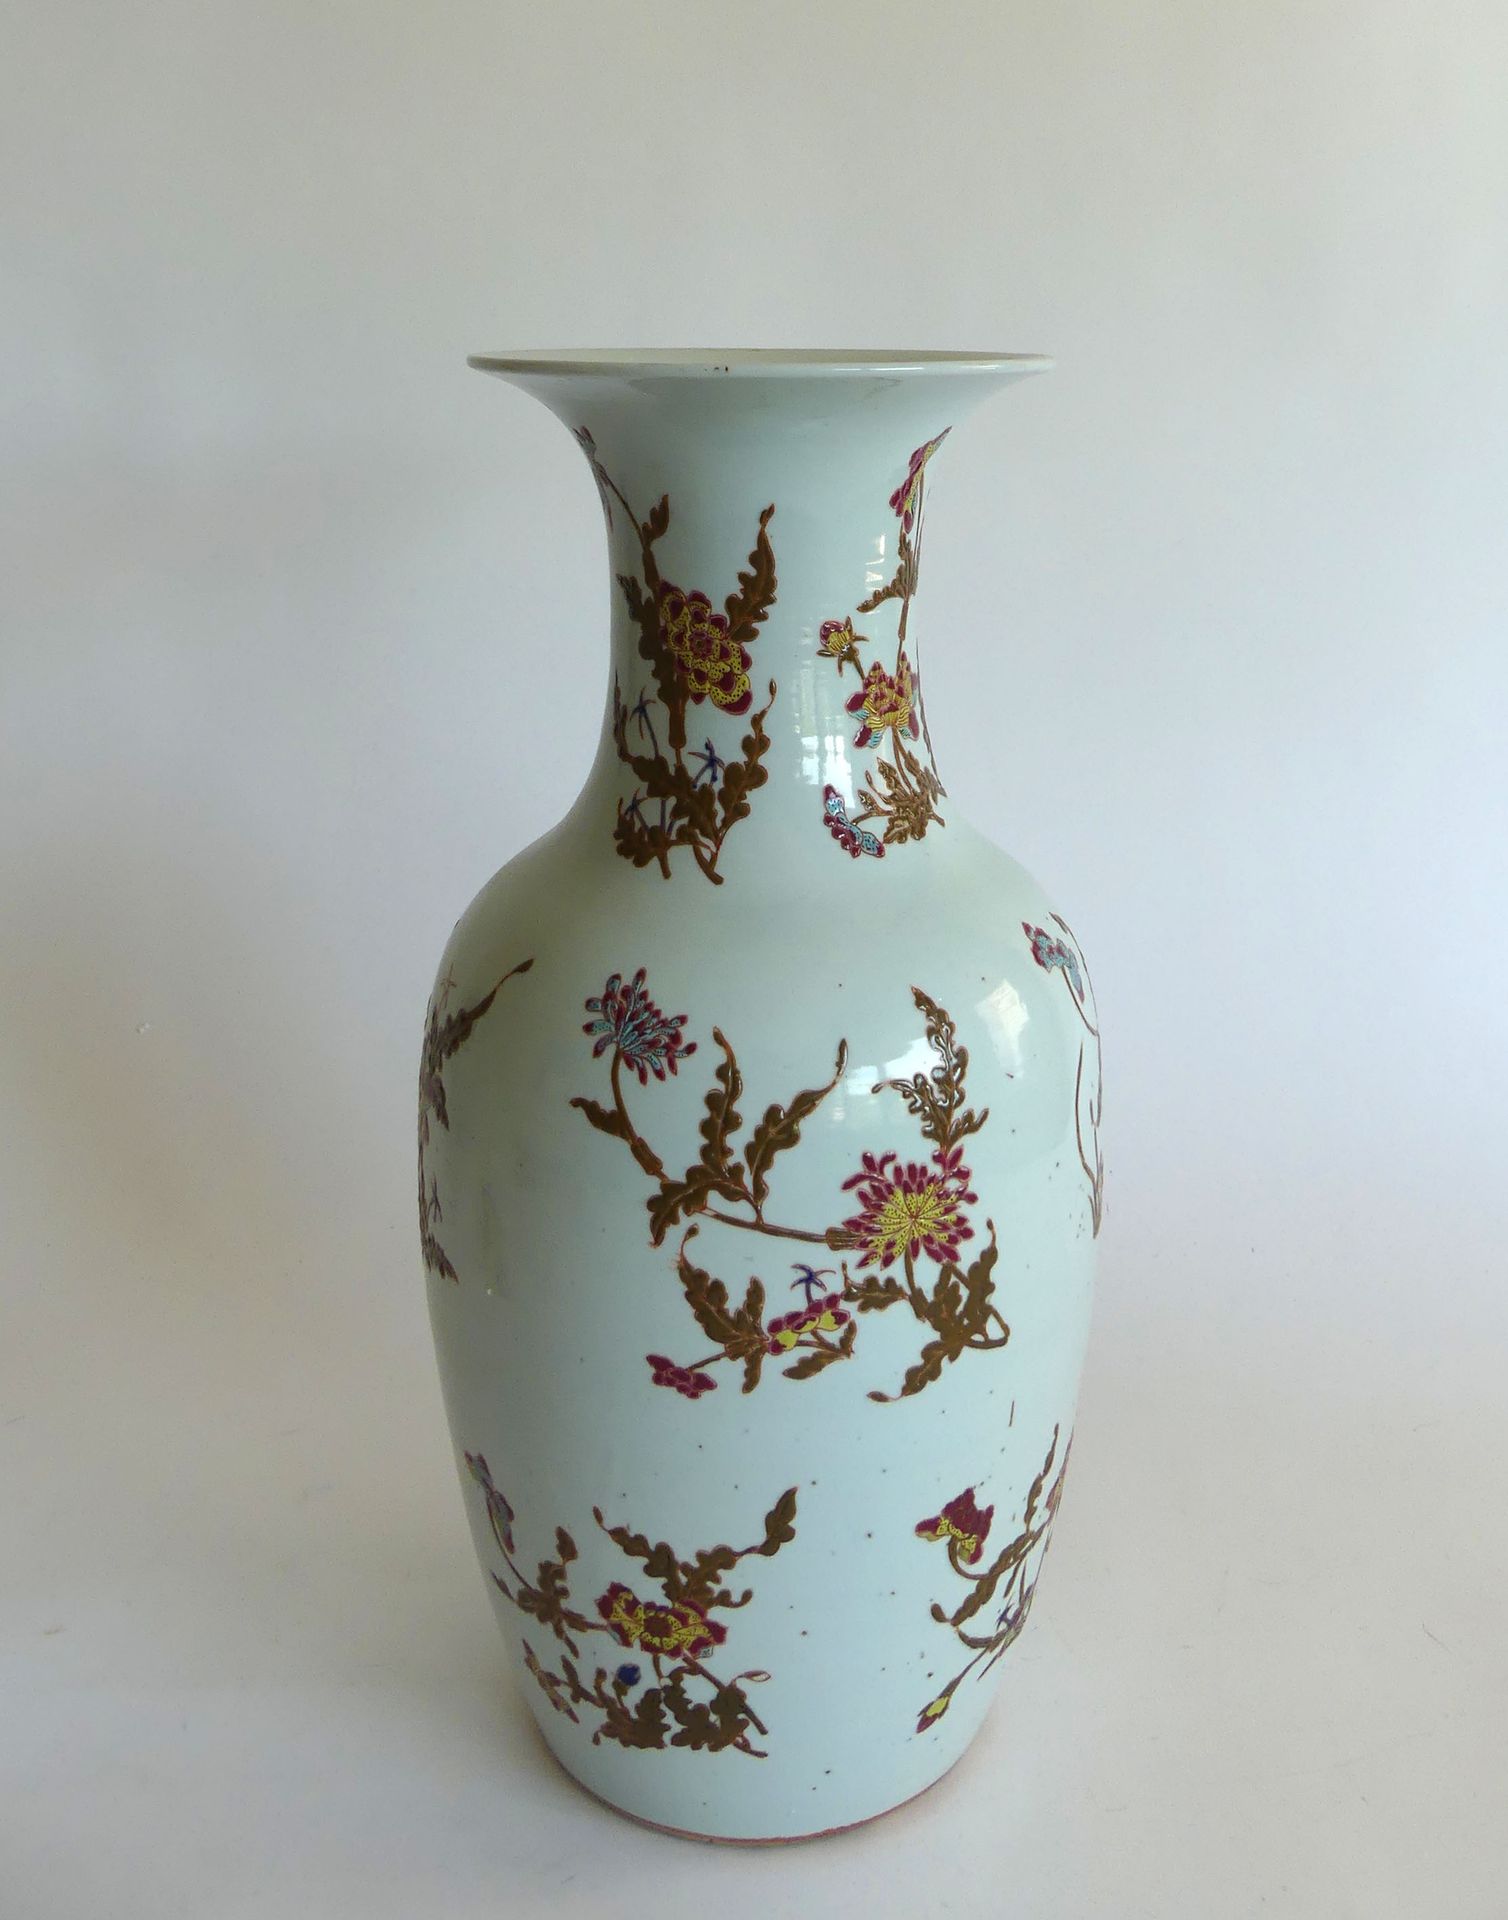 Null 中国。饰有黄色、红色、棕色花朵和绿松石的白瓷柱形花瓶。高44厘米，康熙年间。高43厘米